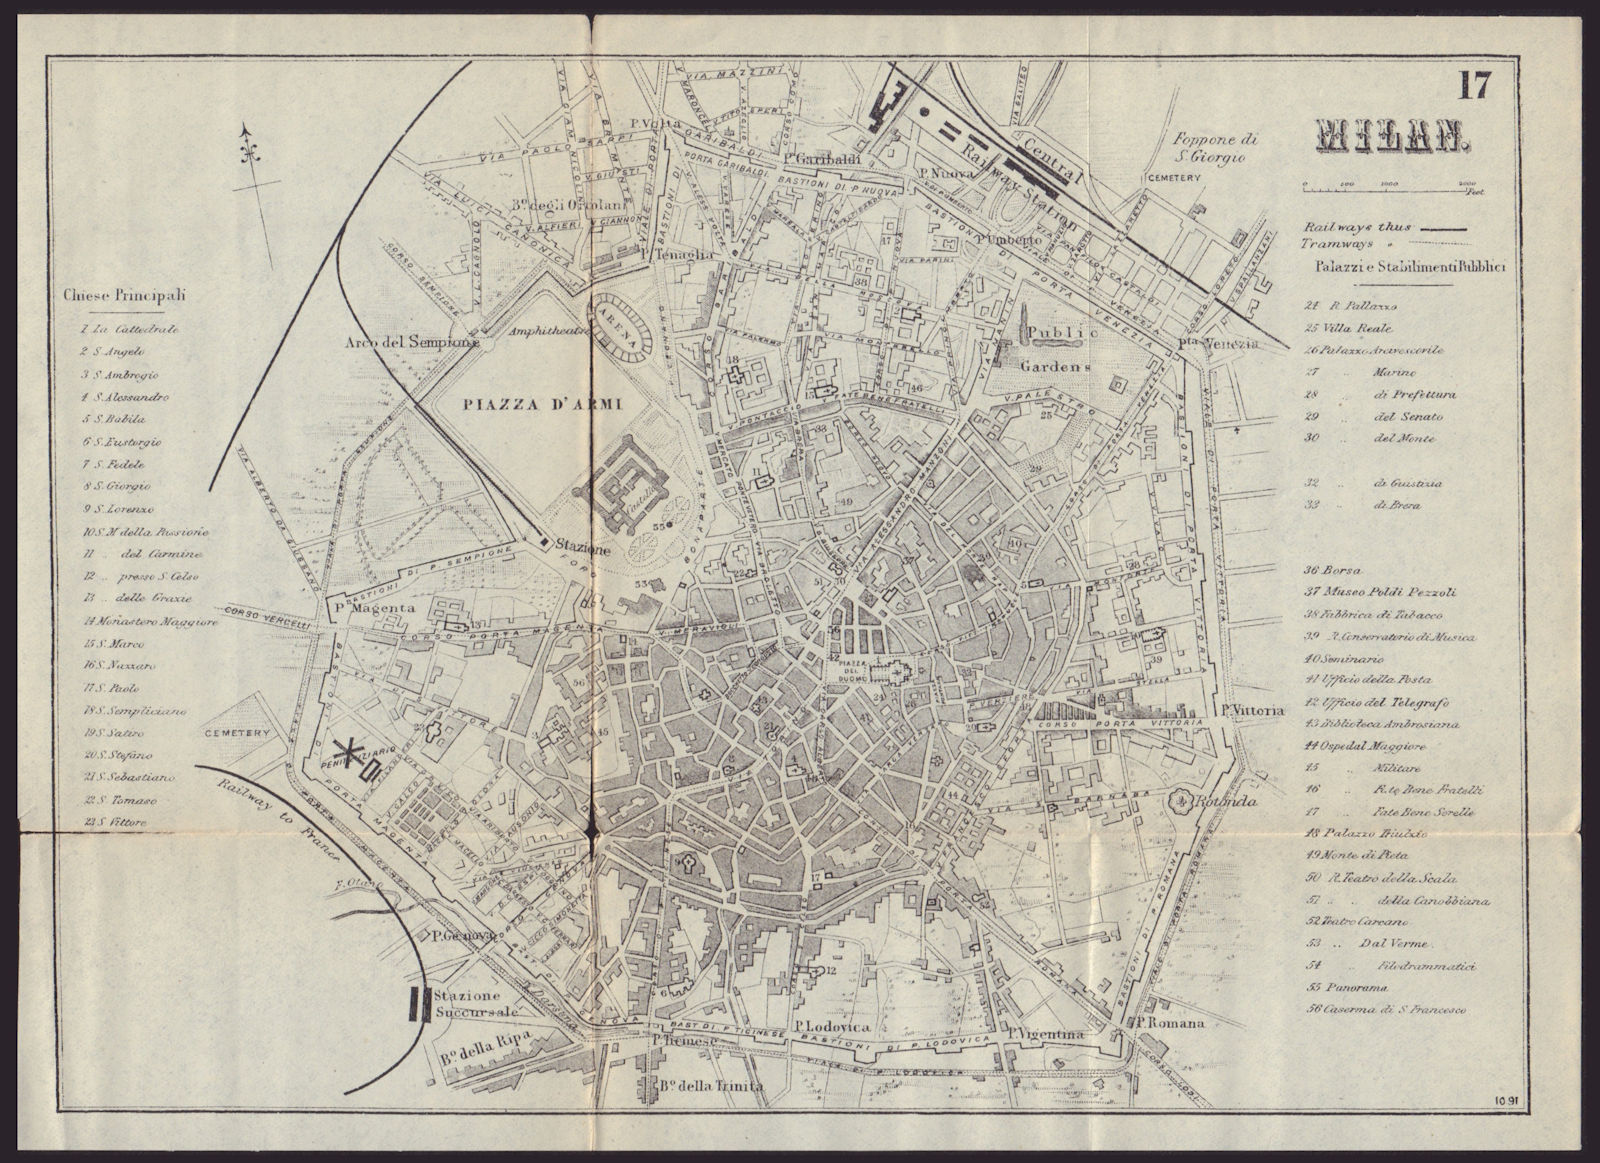 MILAN MILANO antique town plan city map. Italy. BRADSHAW 1892 old